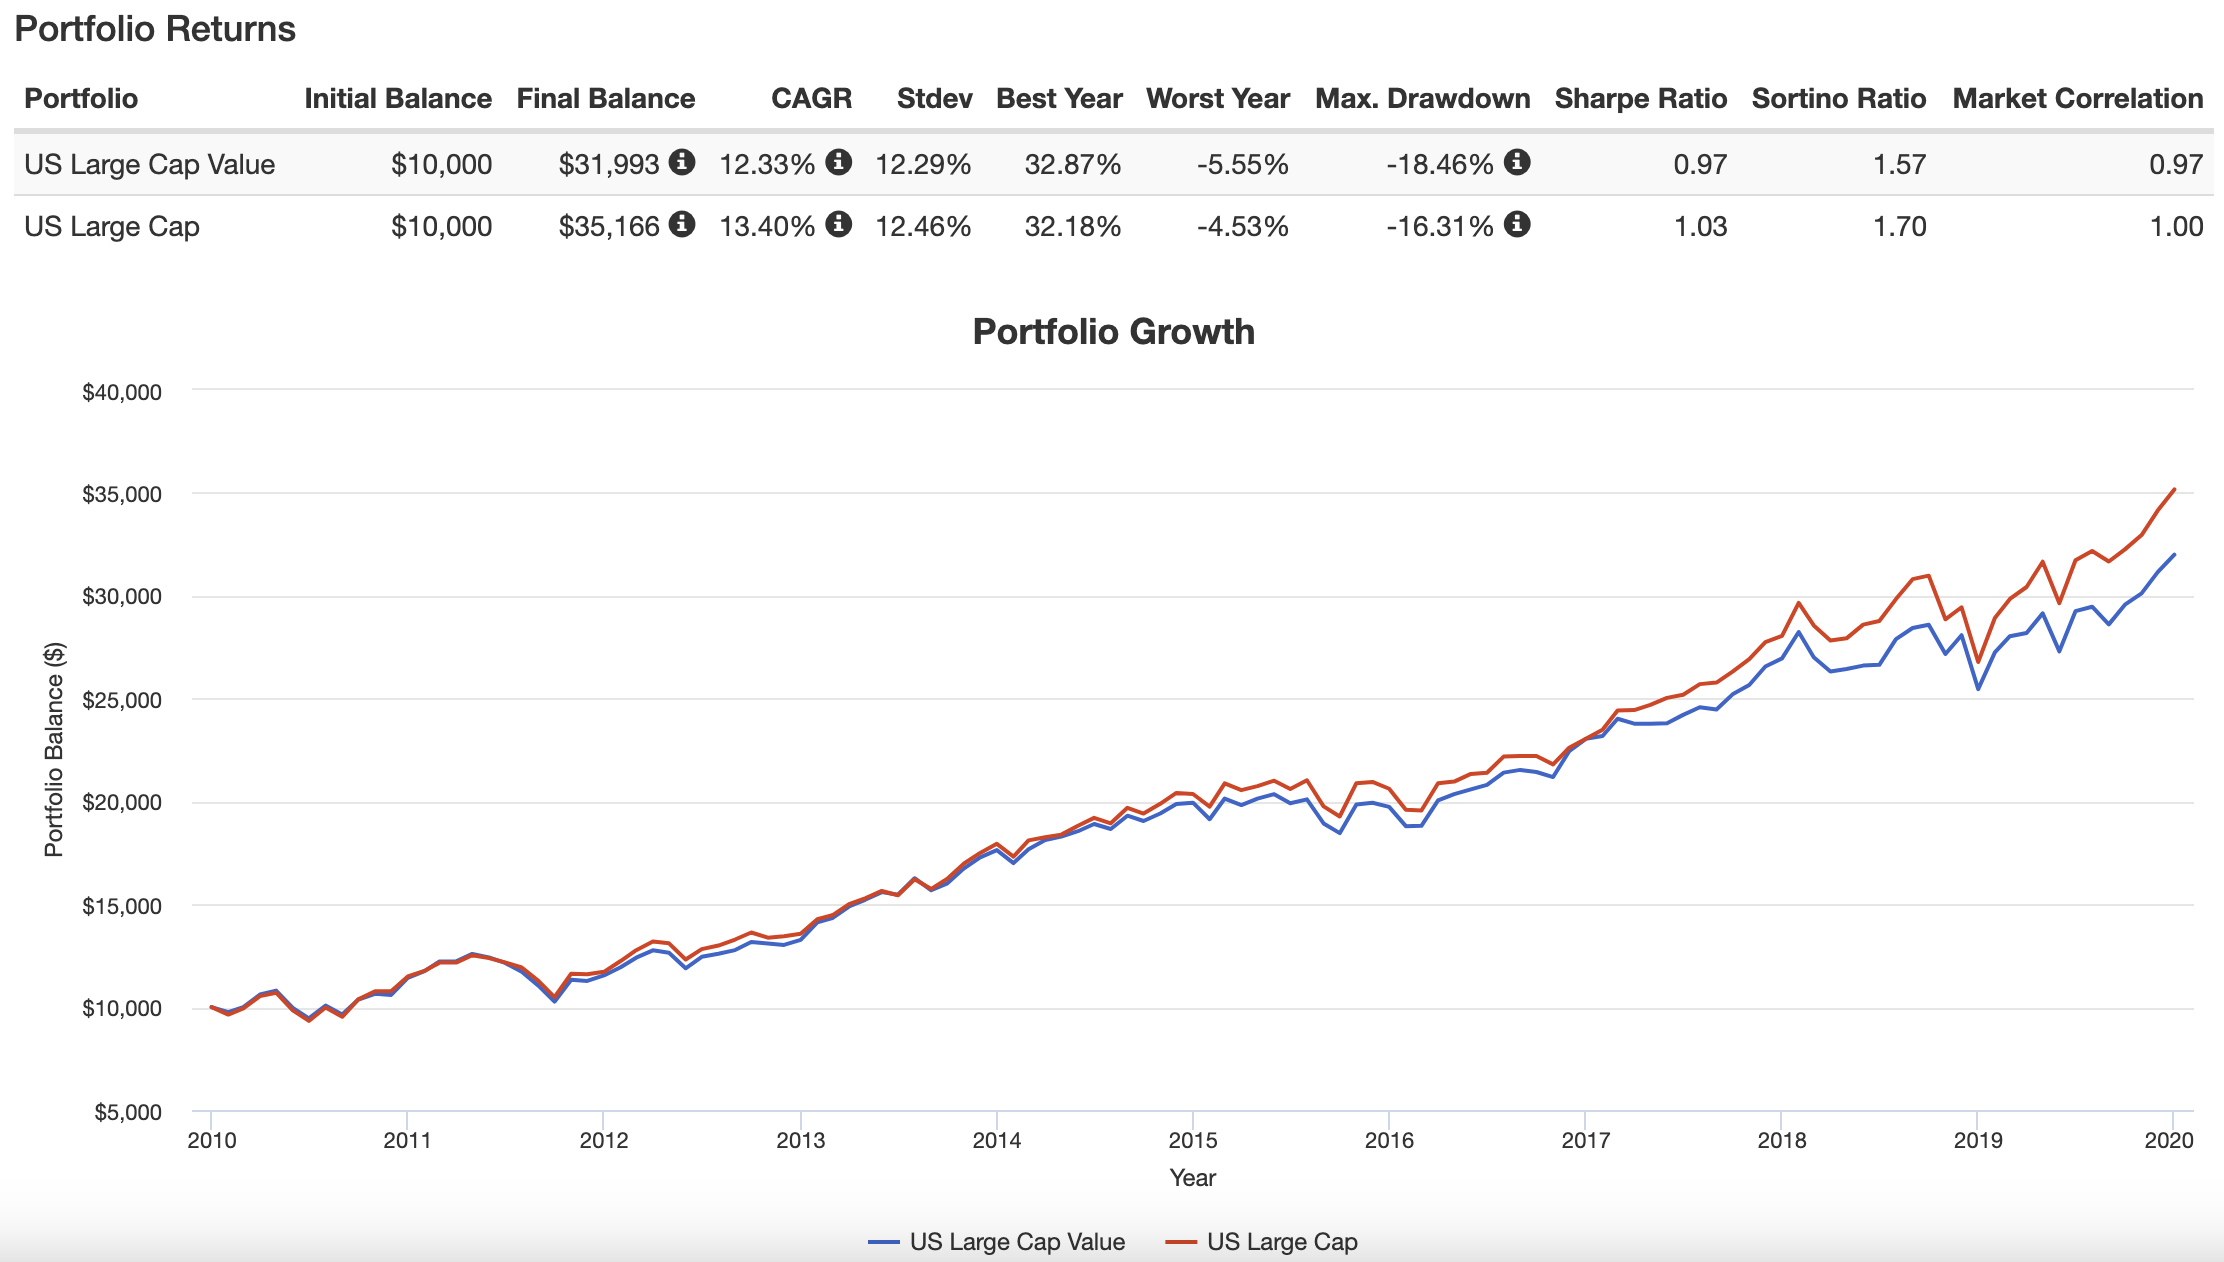 US Large Cap Value versus US Large Cap blend 2010s Portfolio Returns